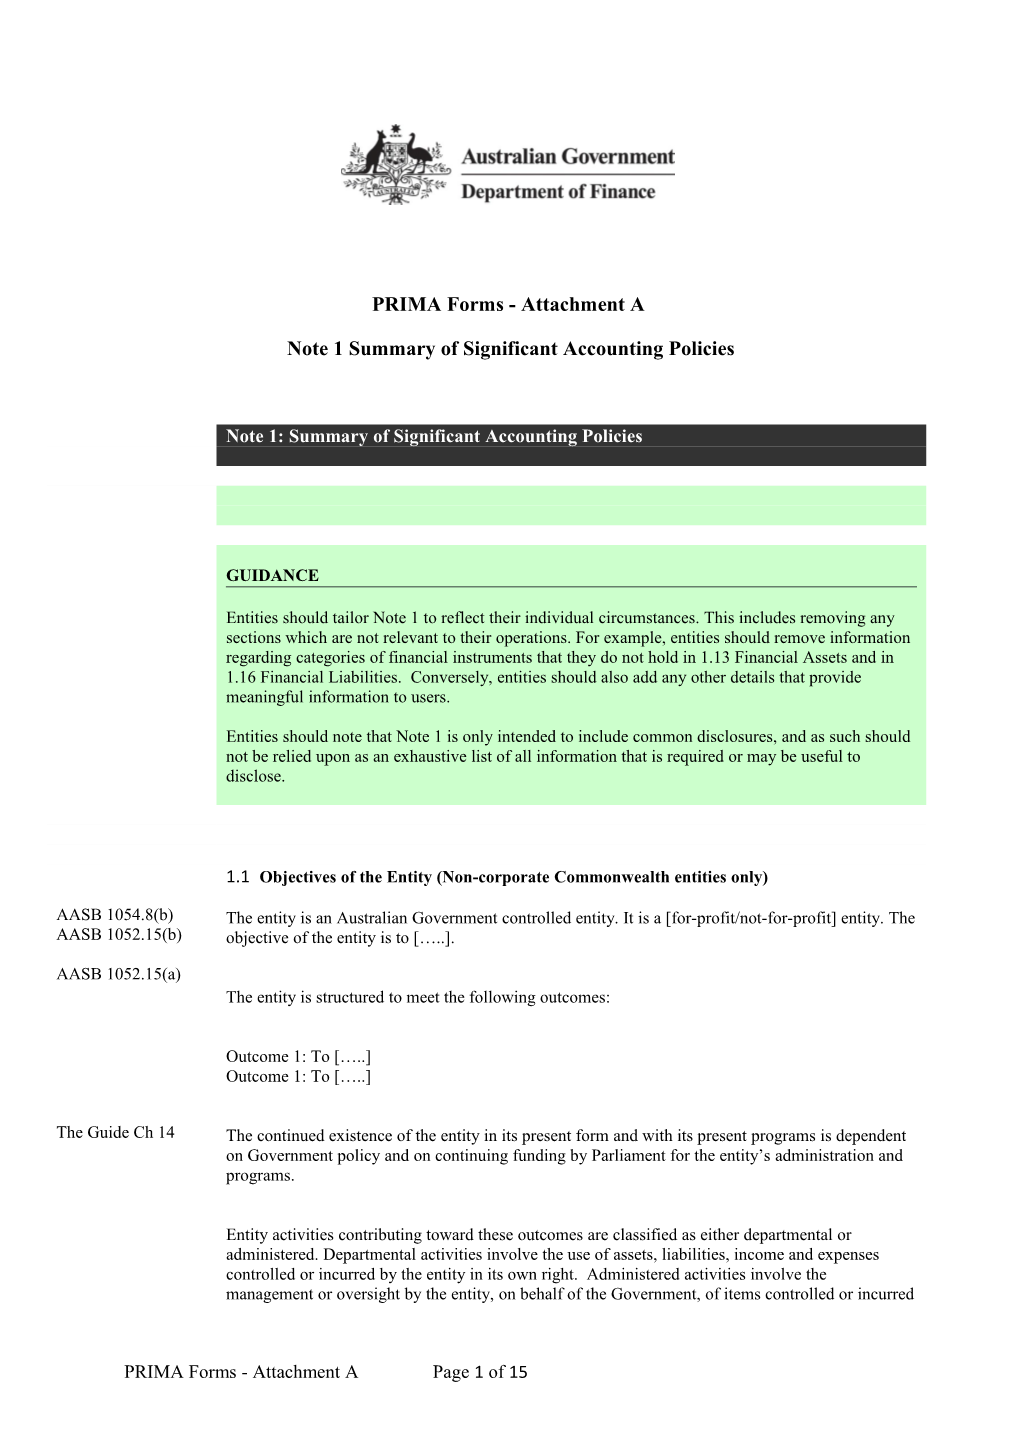 2014-15 PRIMA Forms Attachment A